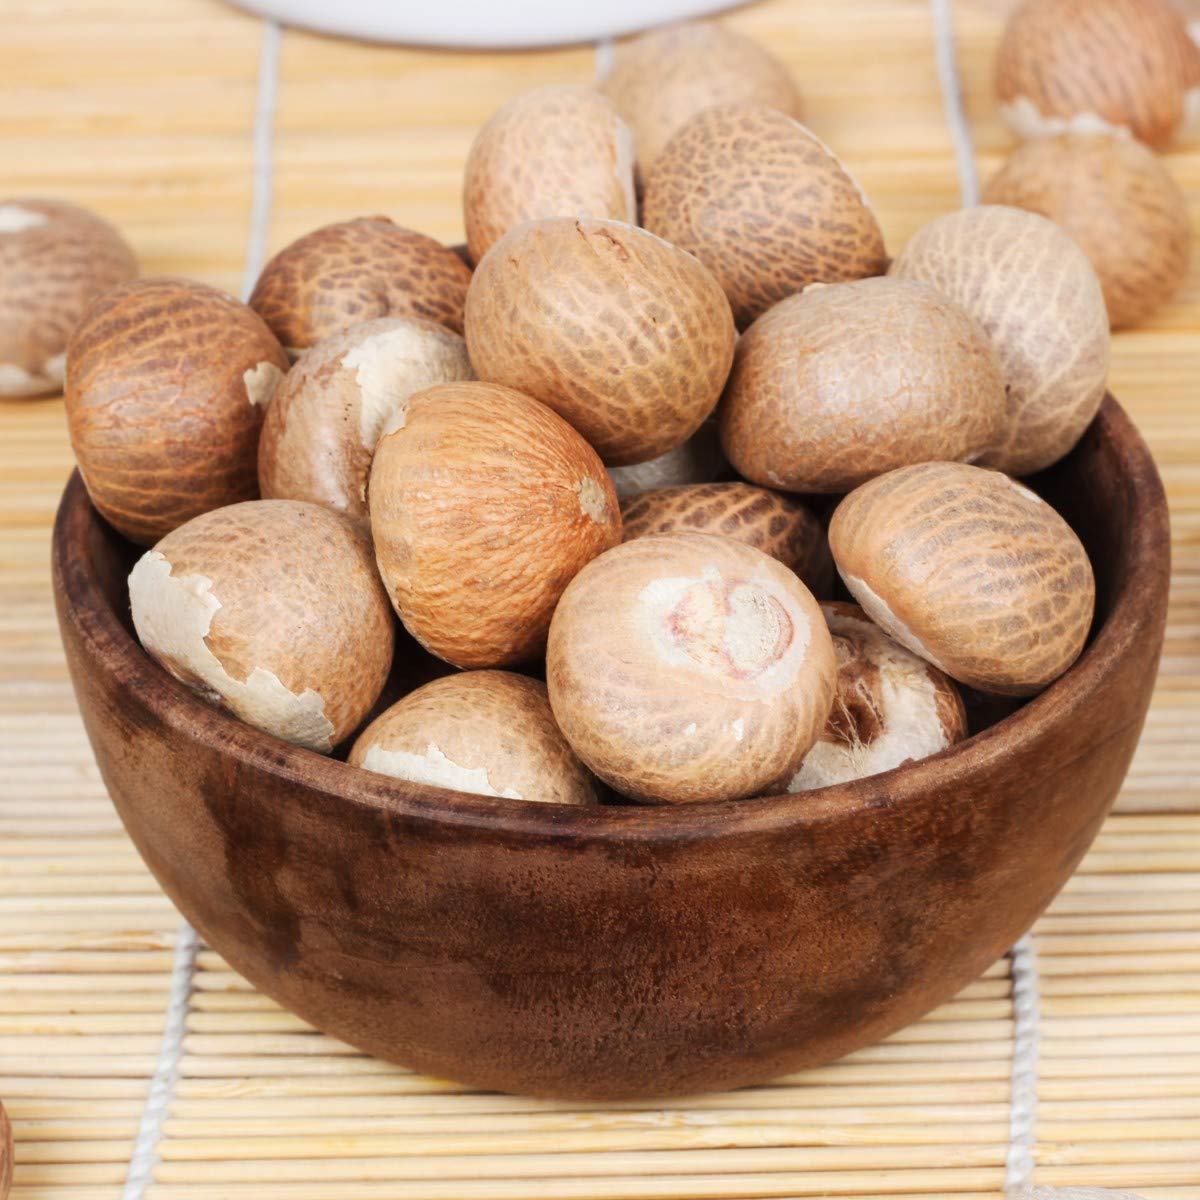 Buy Betel Nuts in Bulk Worldwide